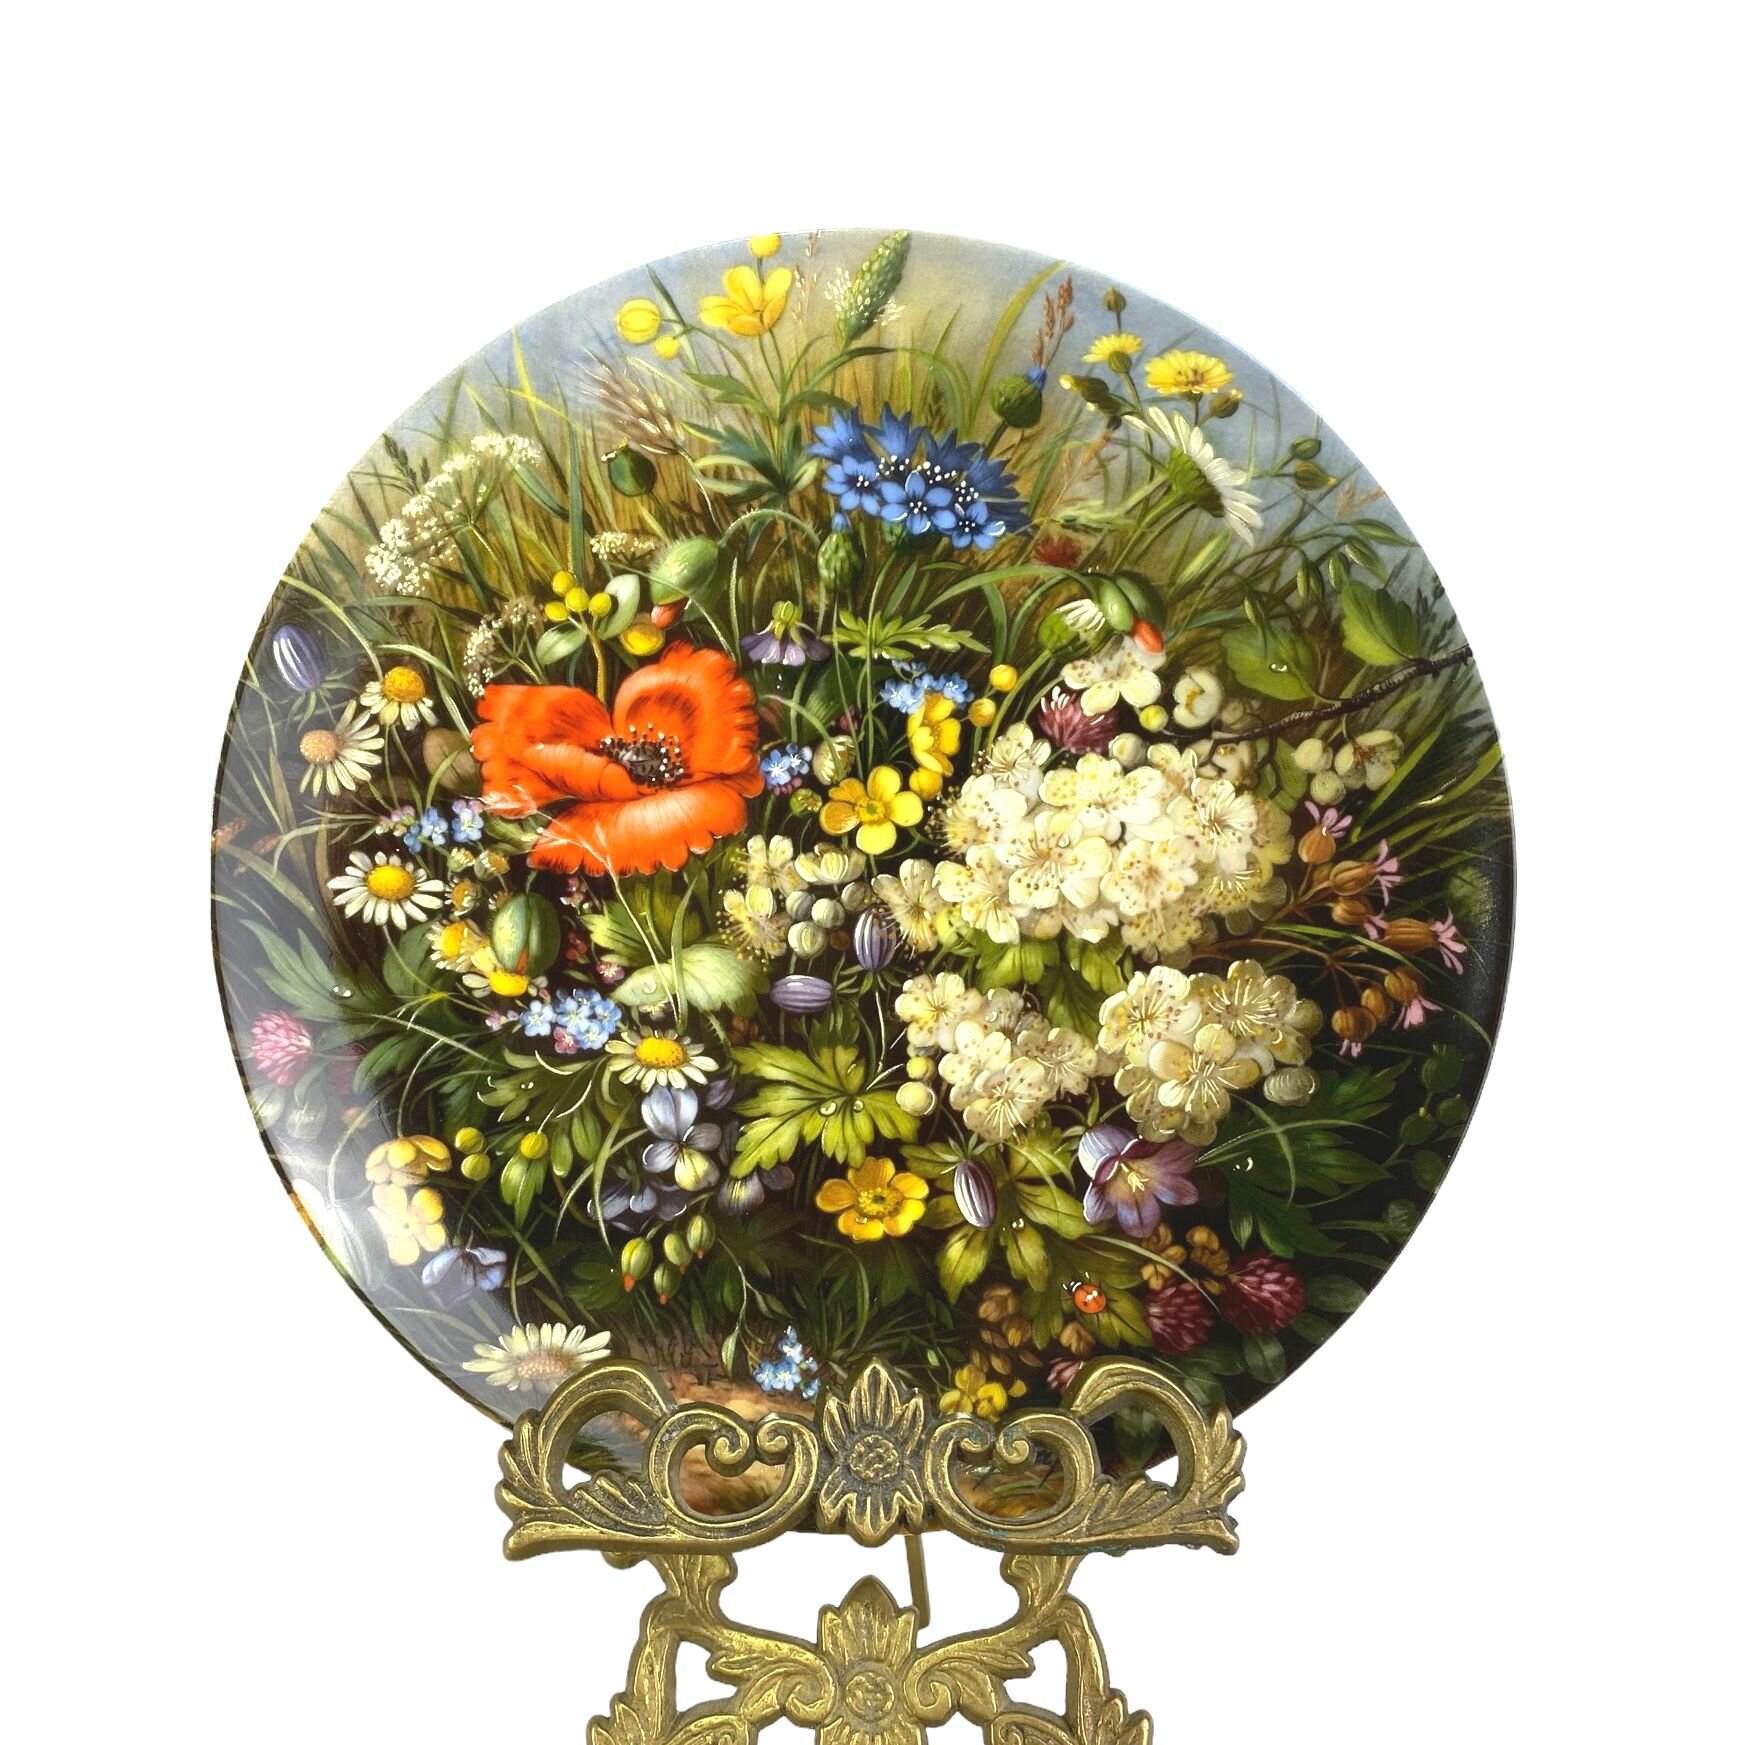 Декоративная винтажная тарелка, На обочине дороги, Am wegesrant, Дикие цветы, Furstenberg. Германия